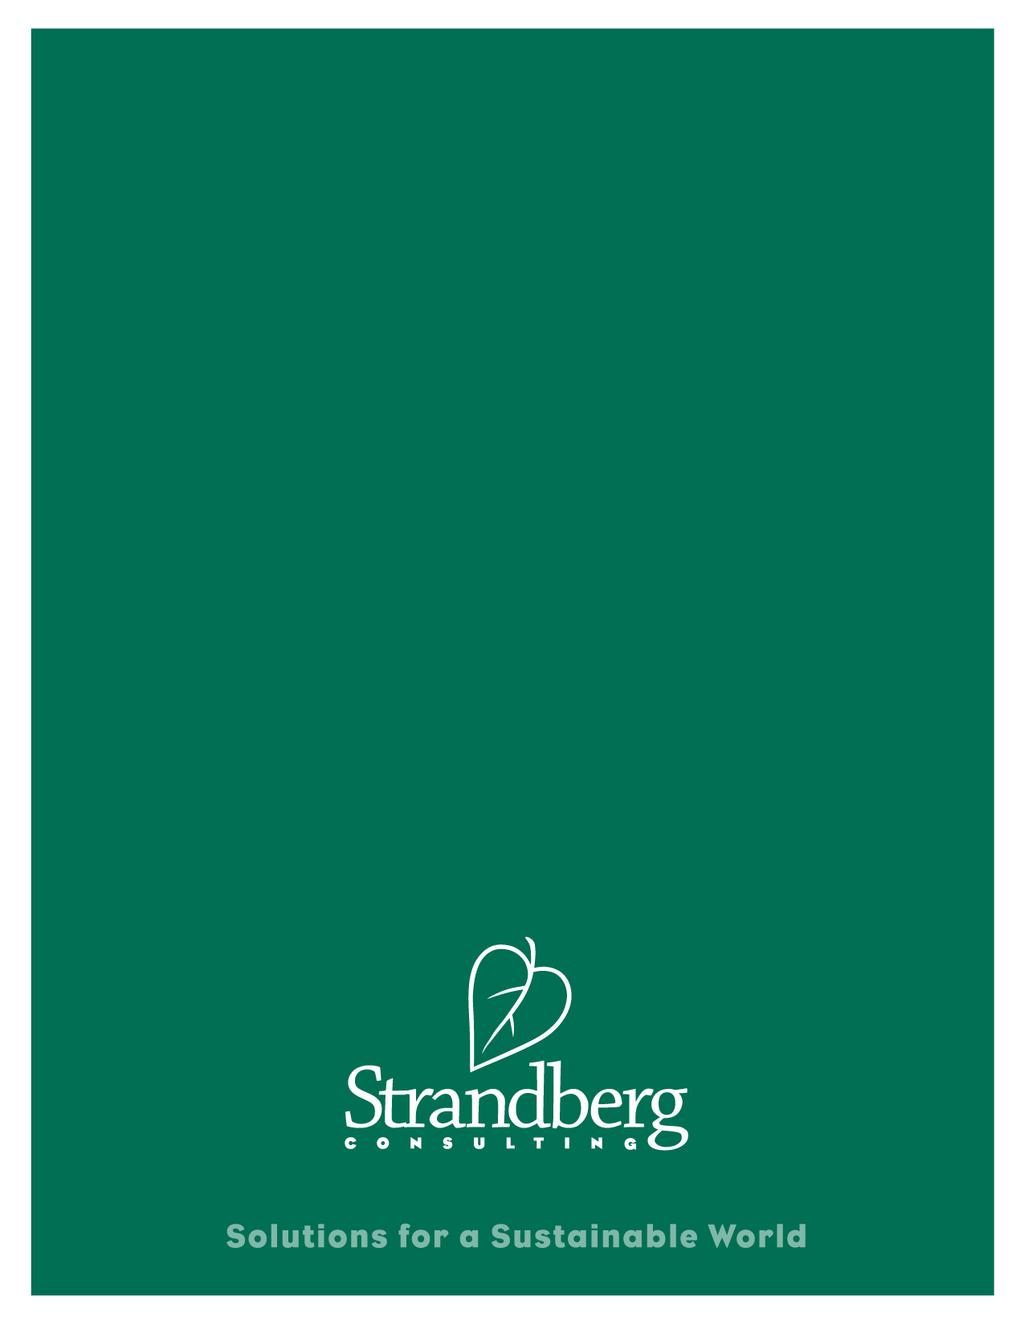 DIVERSITY MANAGEMENT LEADING PRACTICE SCAN by Cr Strandberg Strandberg Cnsulting www.crstrandberg.